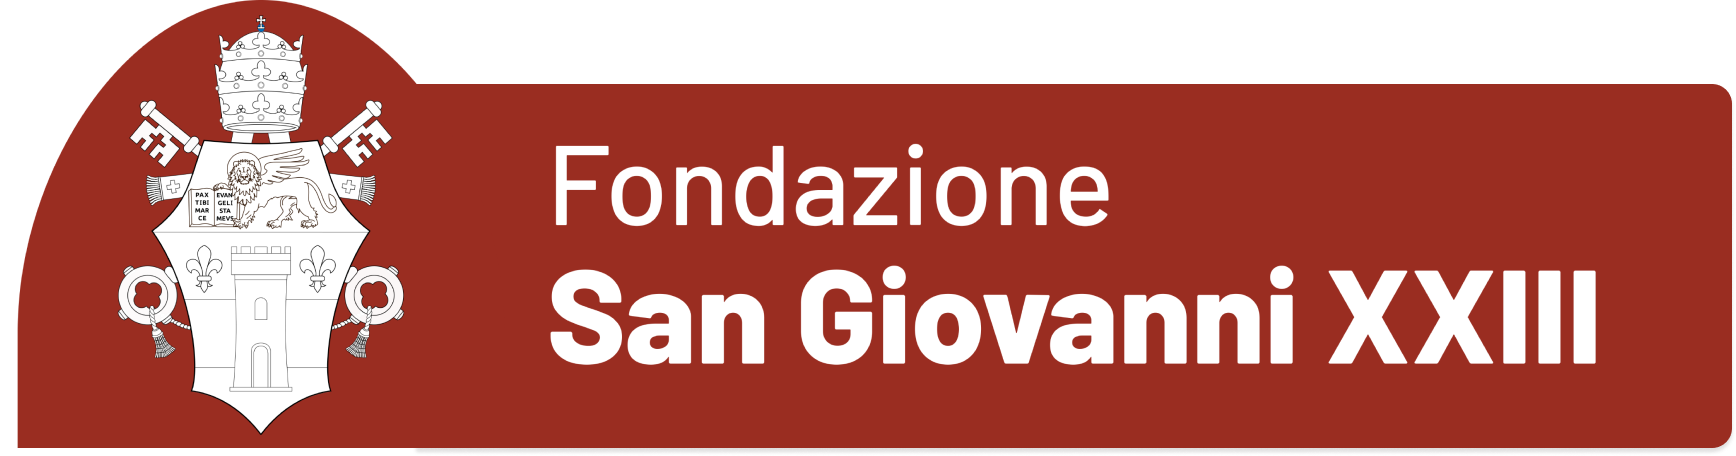 Fondazione San Giovanni XXIII